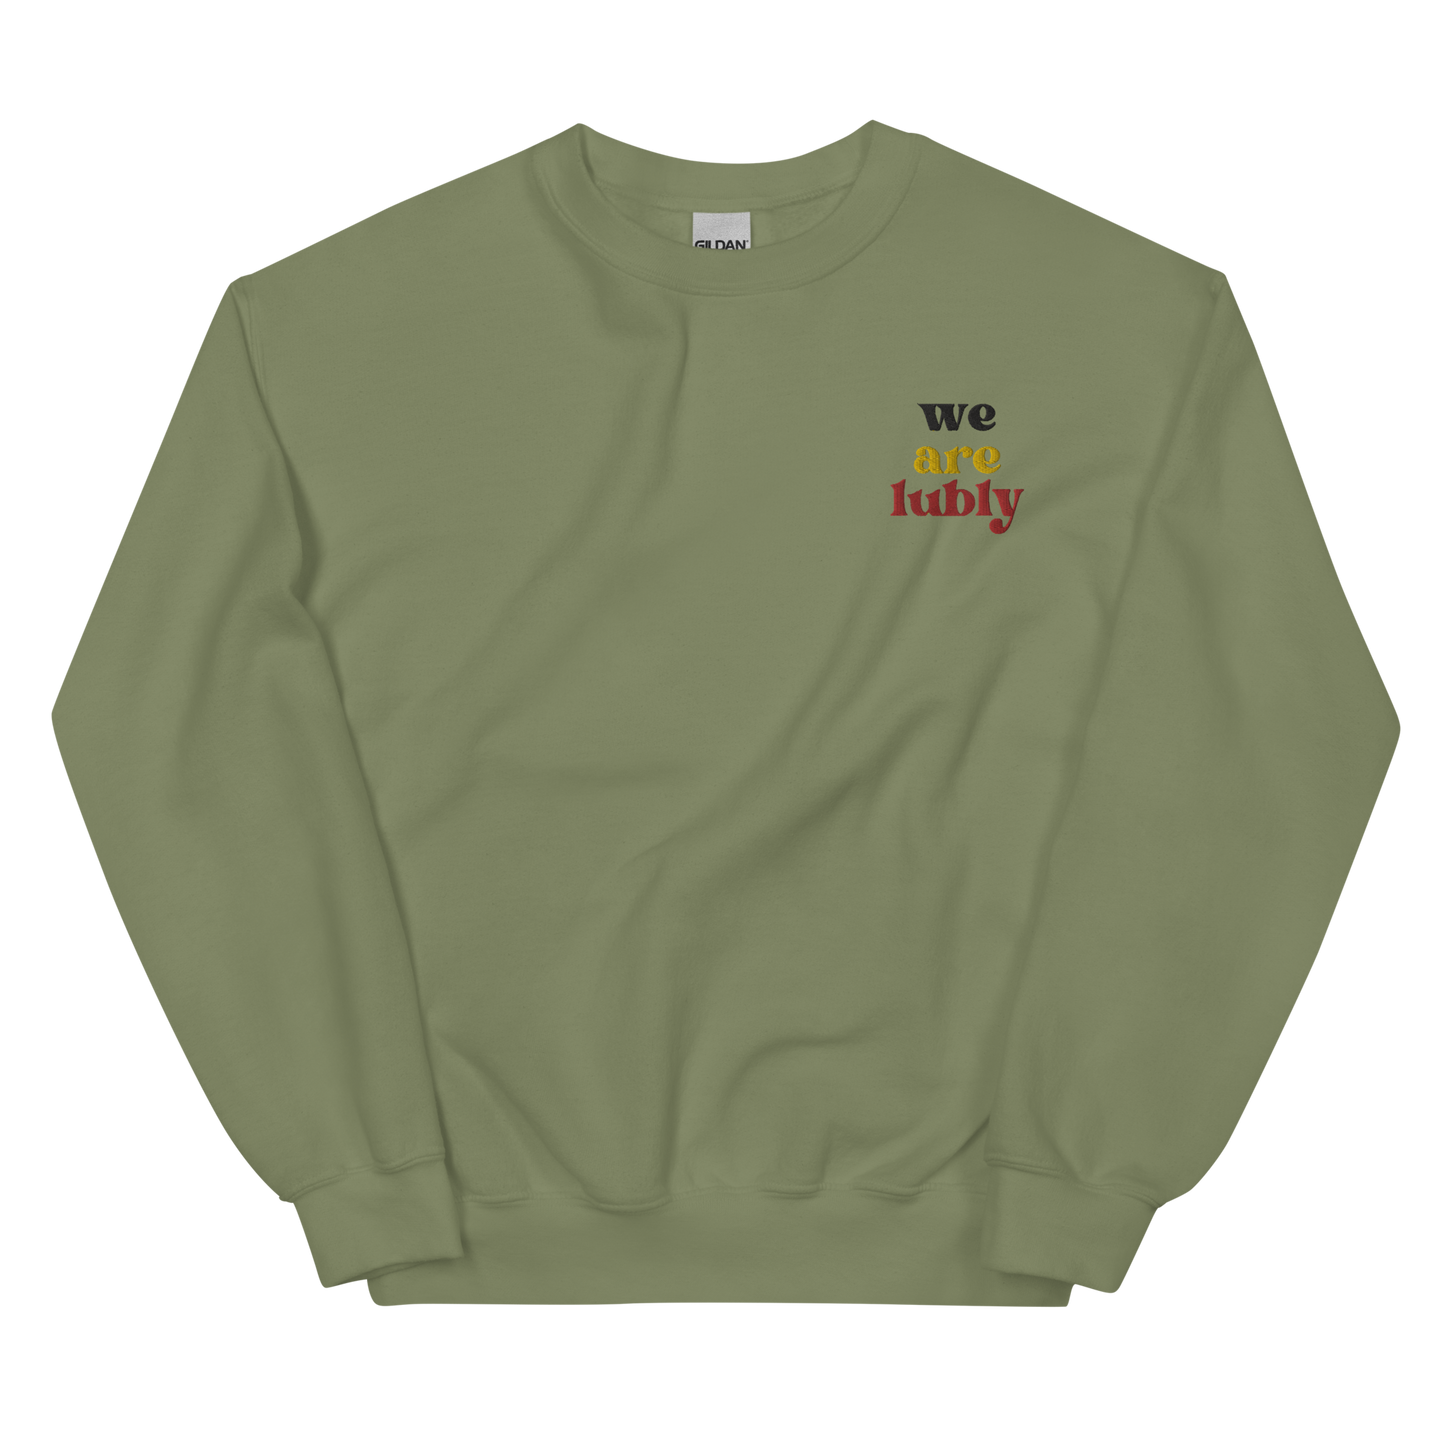 WeAreLubly Sweatshirt